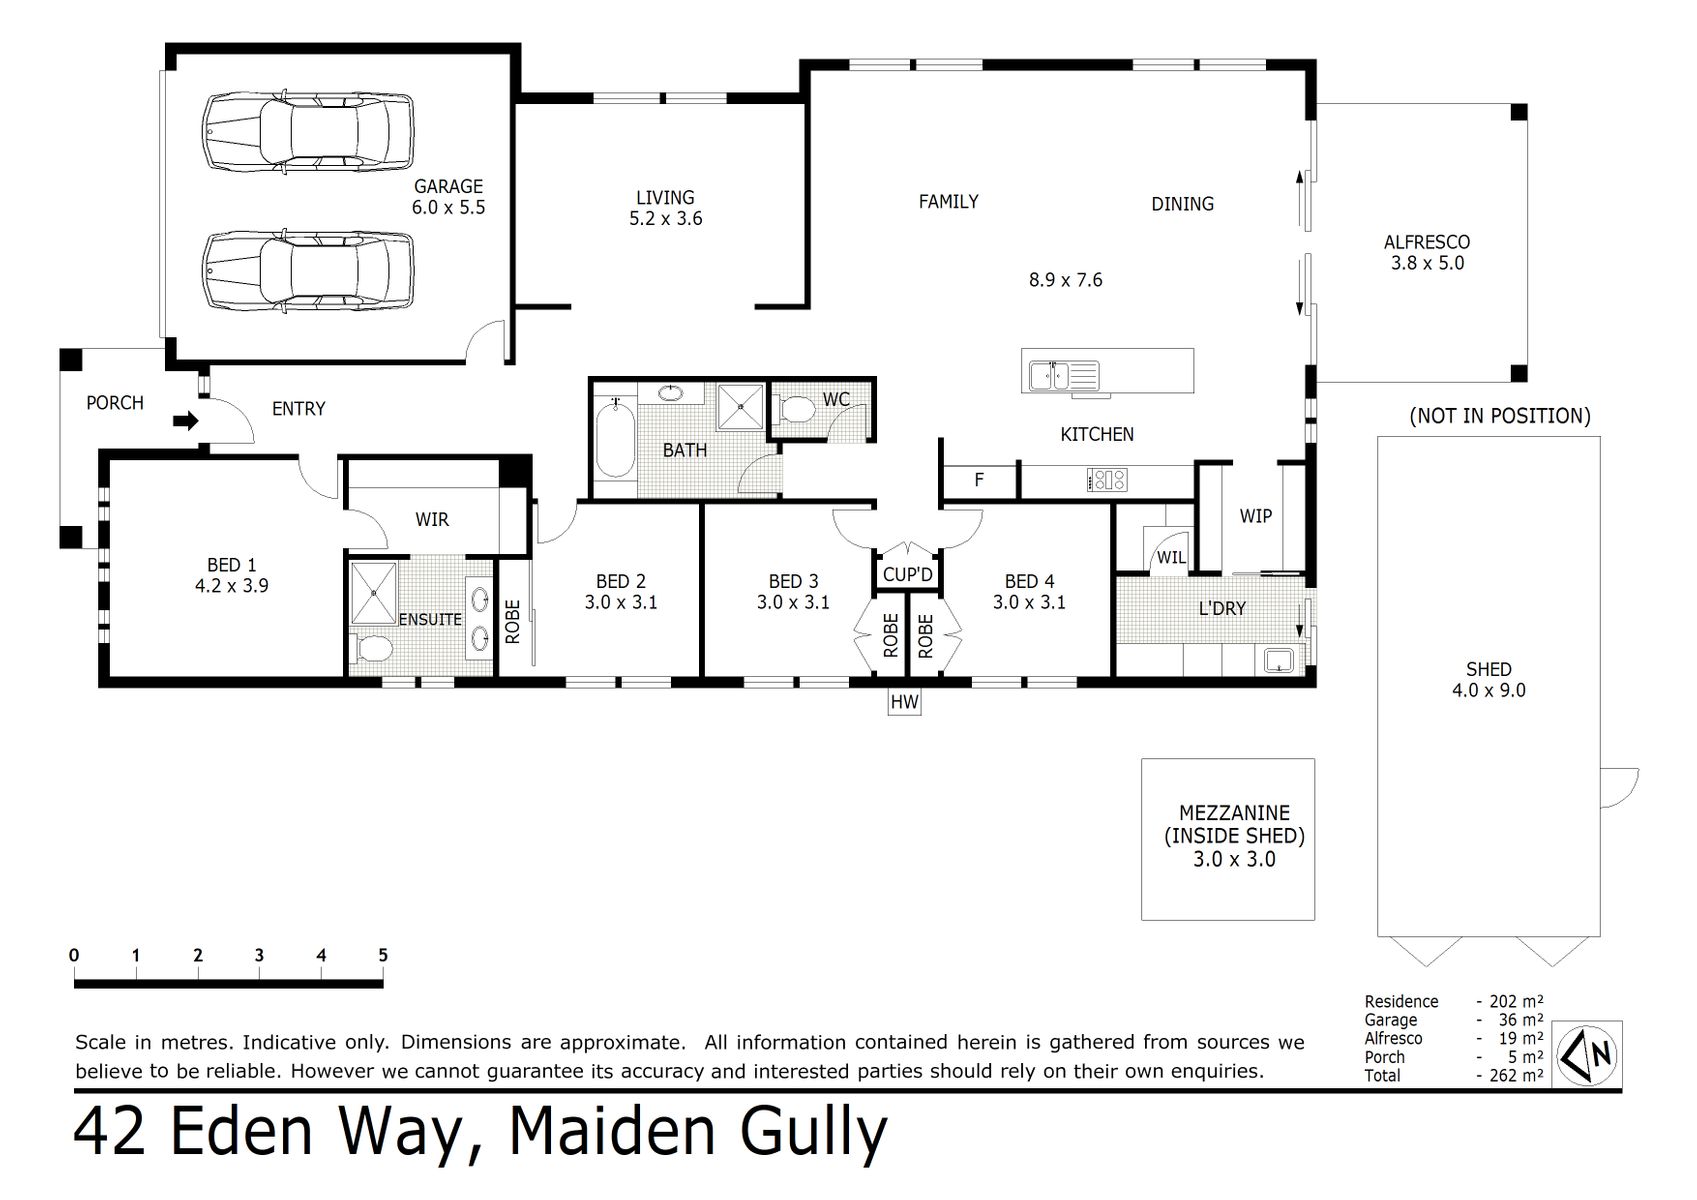 42 Eden Way Maiden Gully (03 SEP 2020) 238sqm